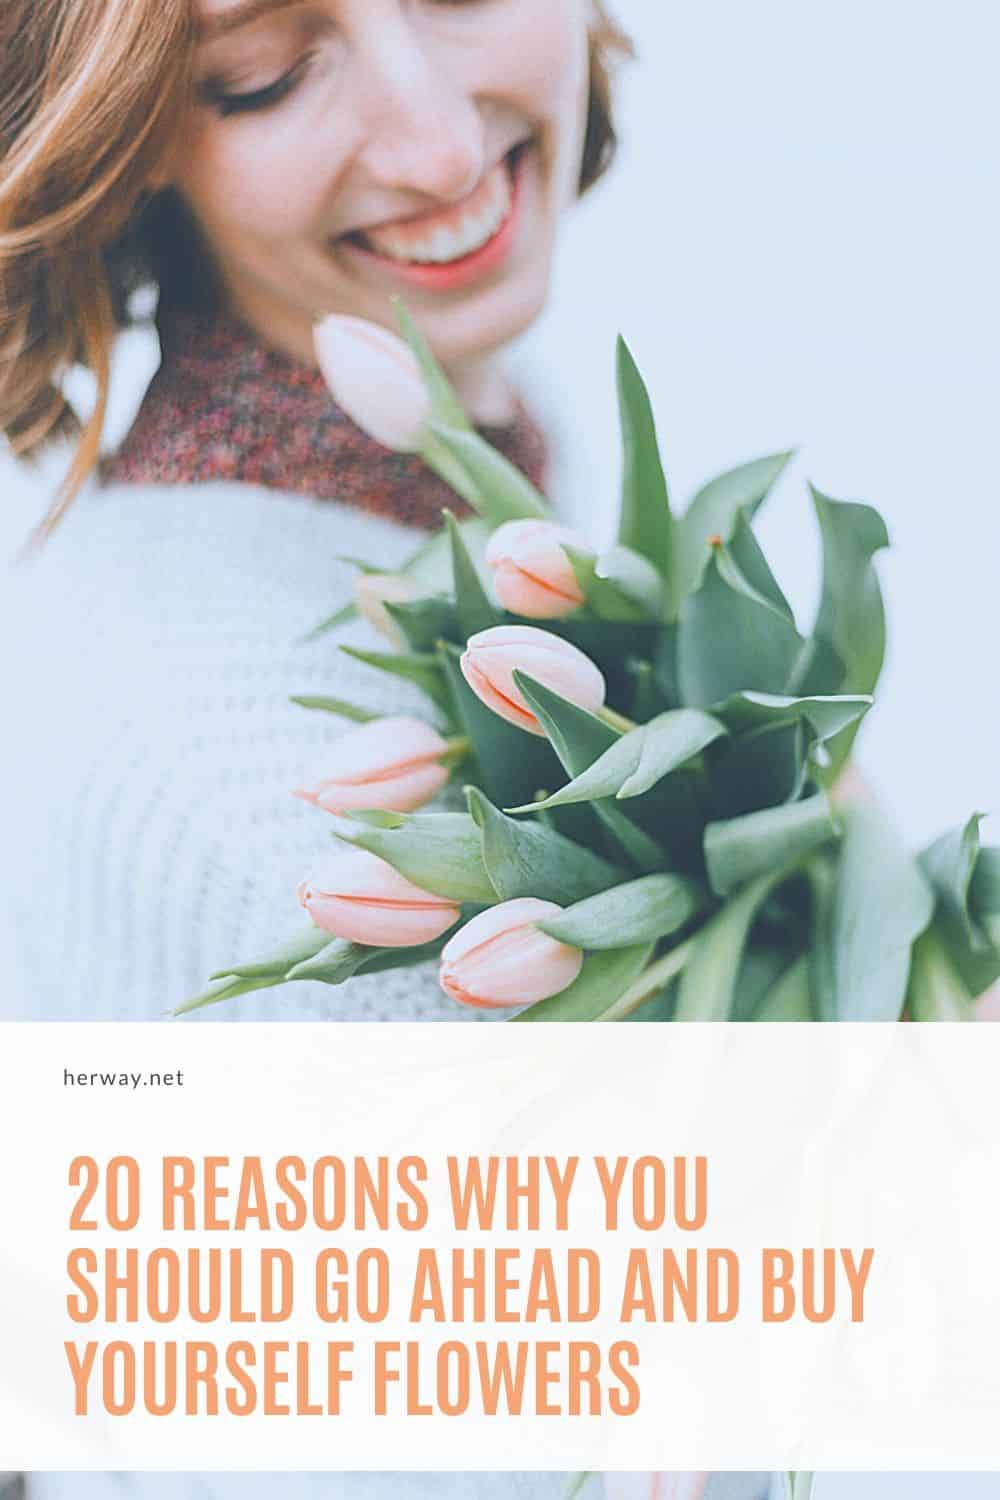 20 motivi per cui dovreste andare avanti e comprarti dei fiori